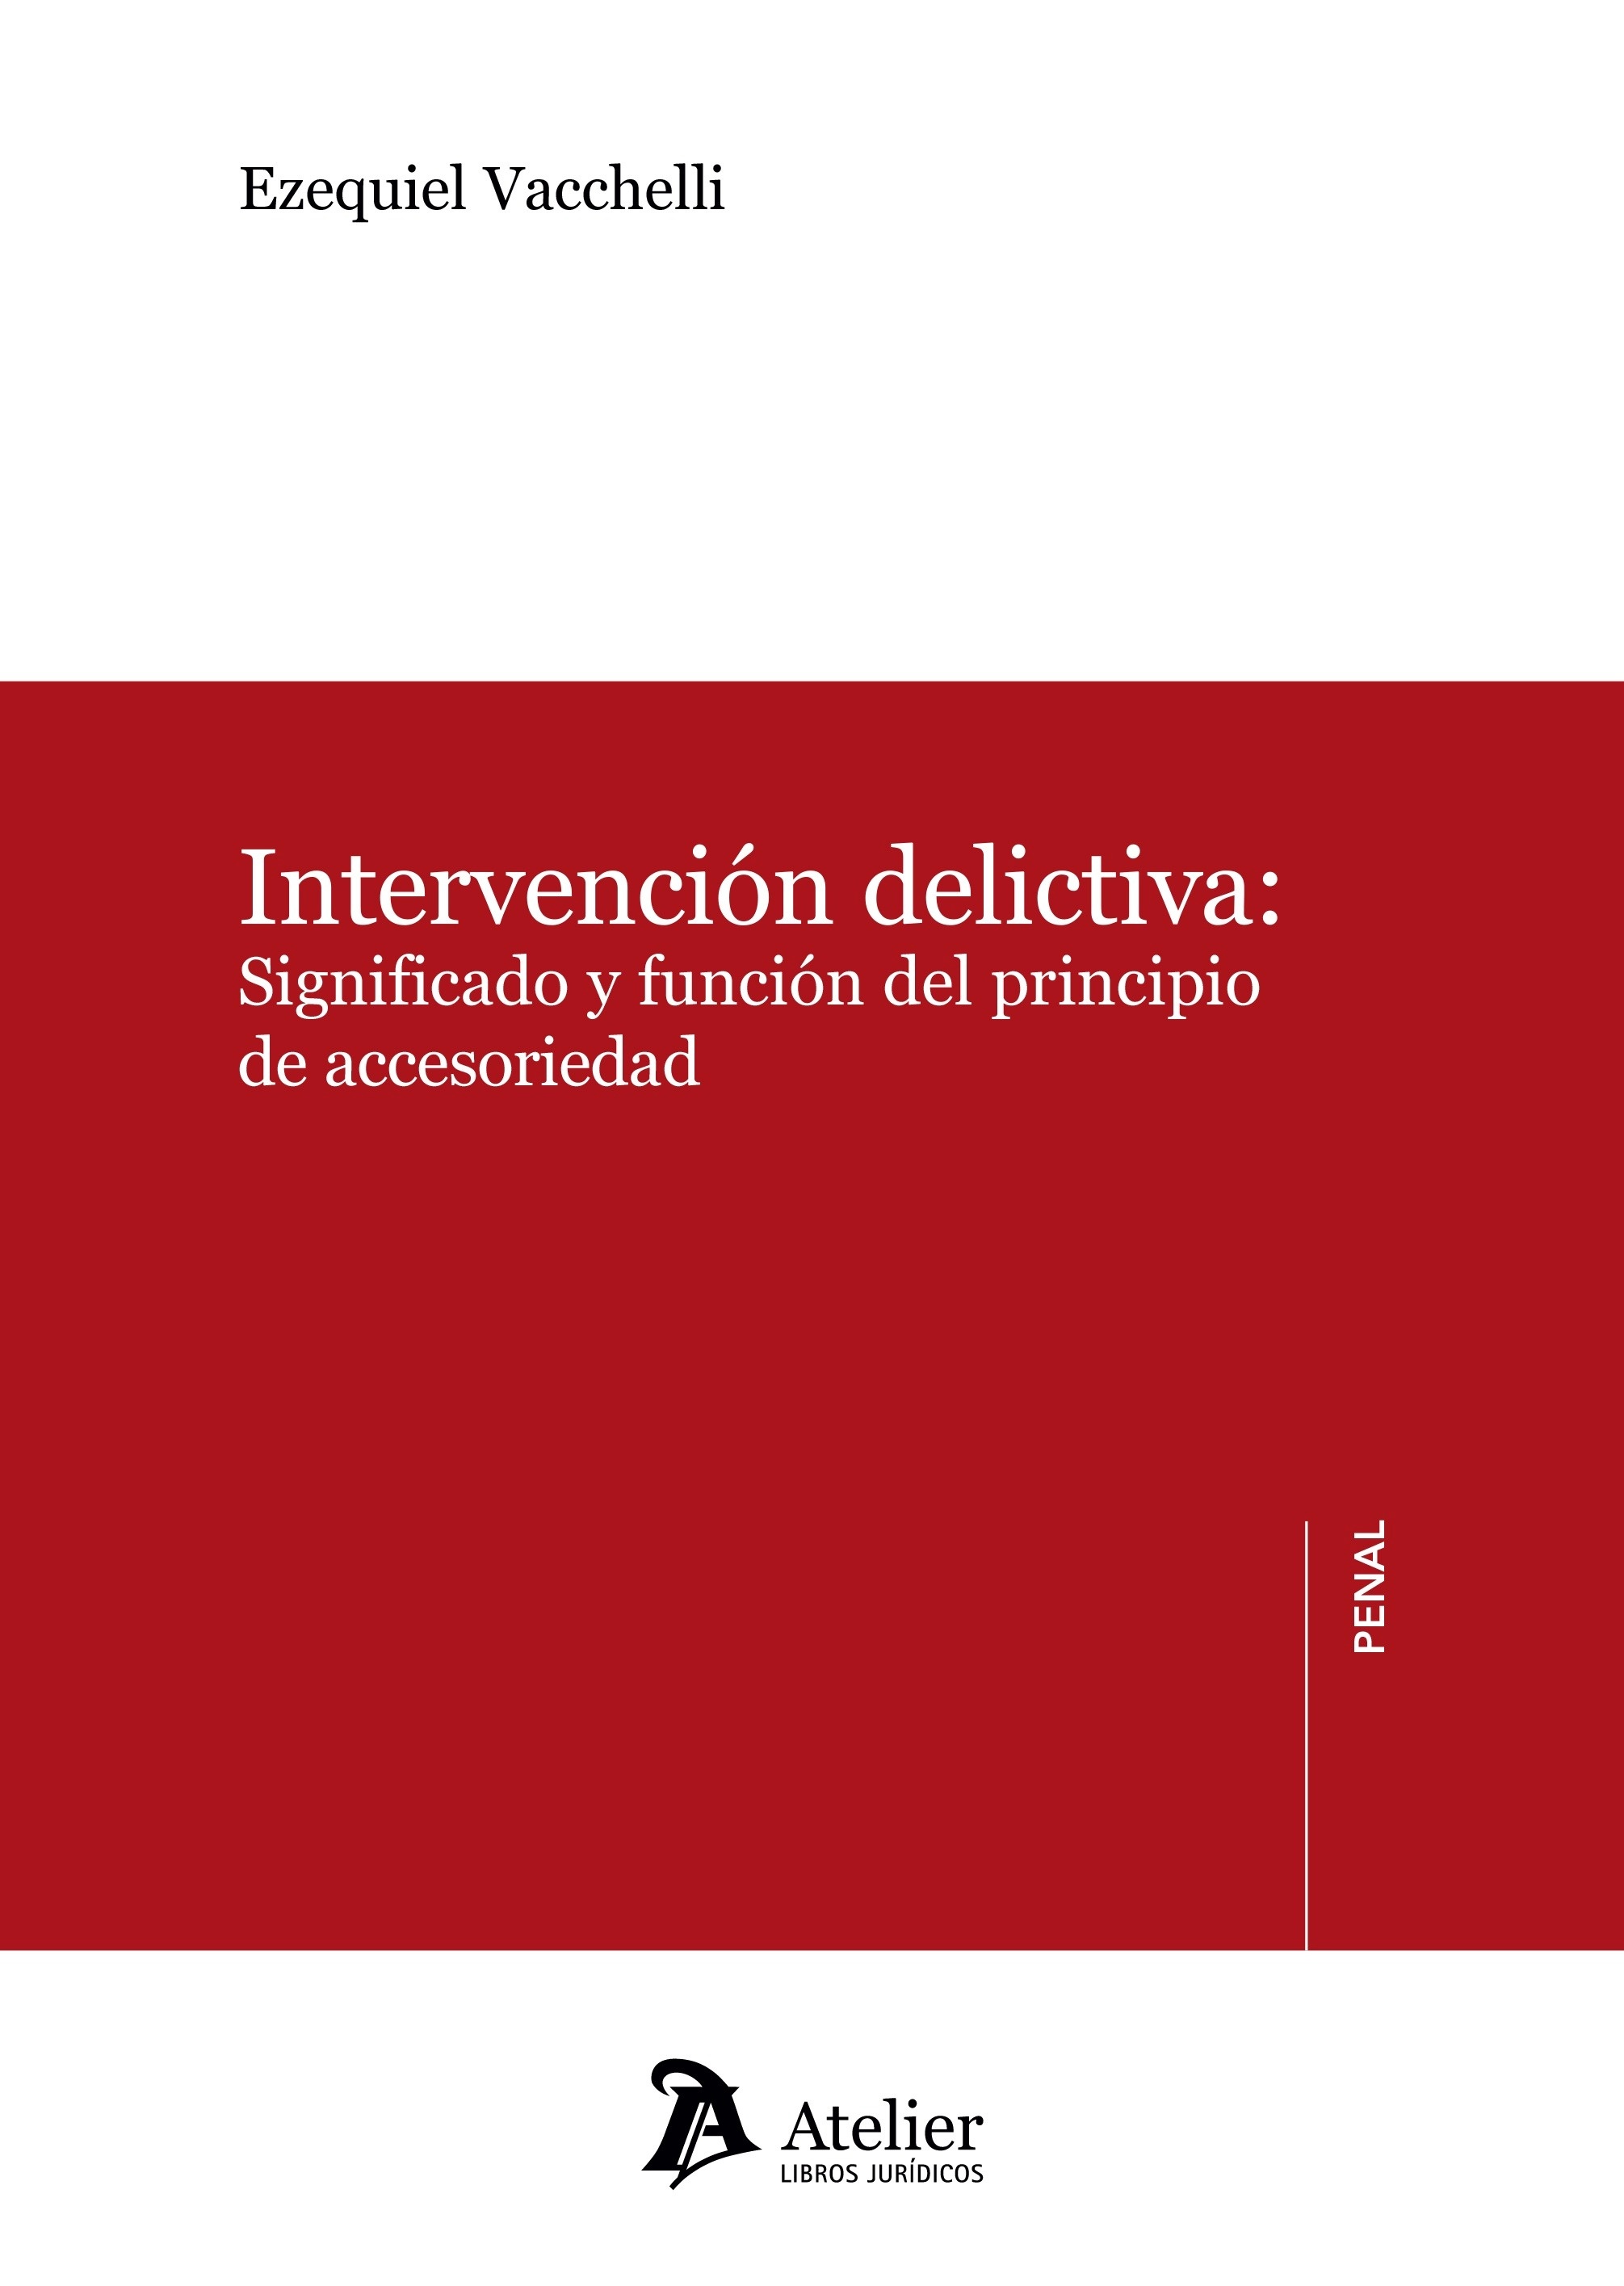 Intervención delictiva: significado y función del principio de acccesoriedad